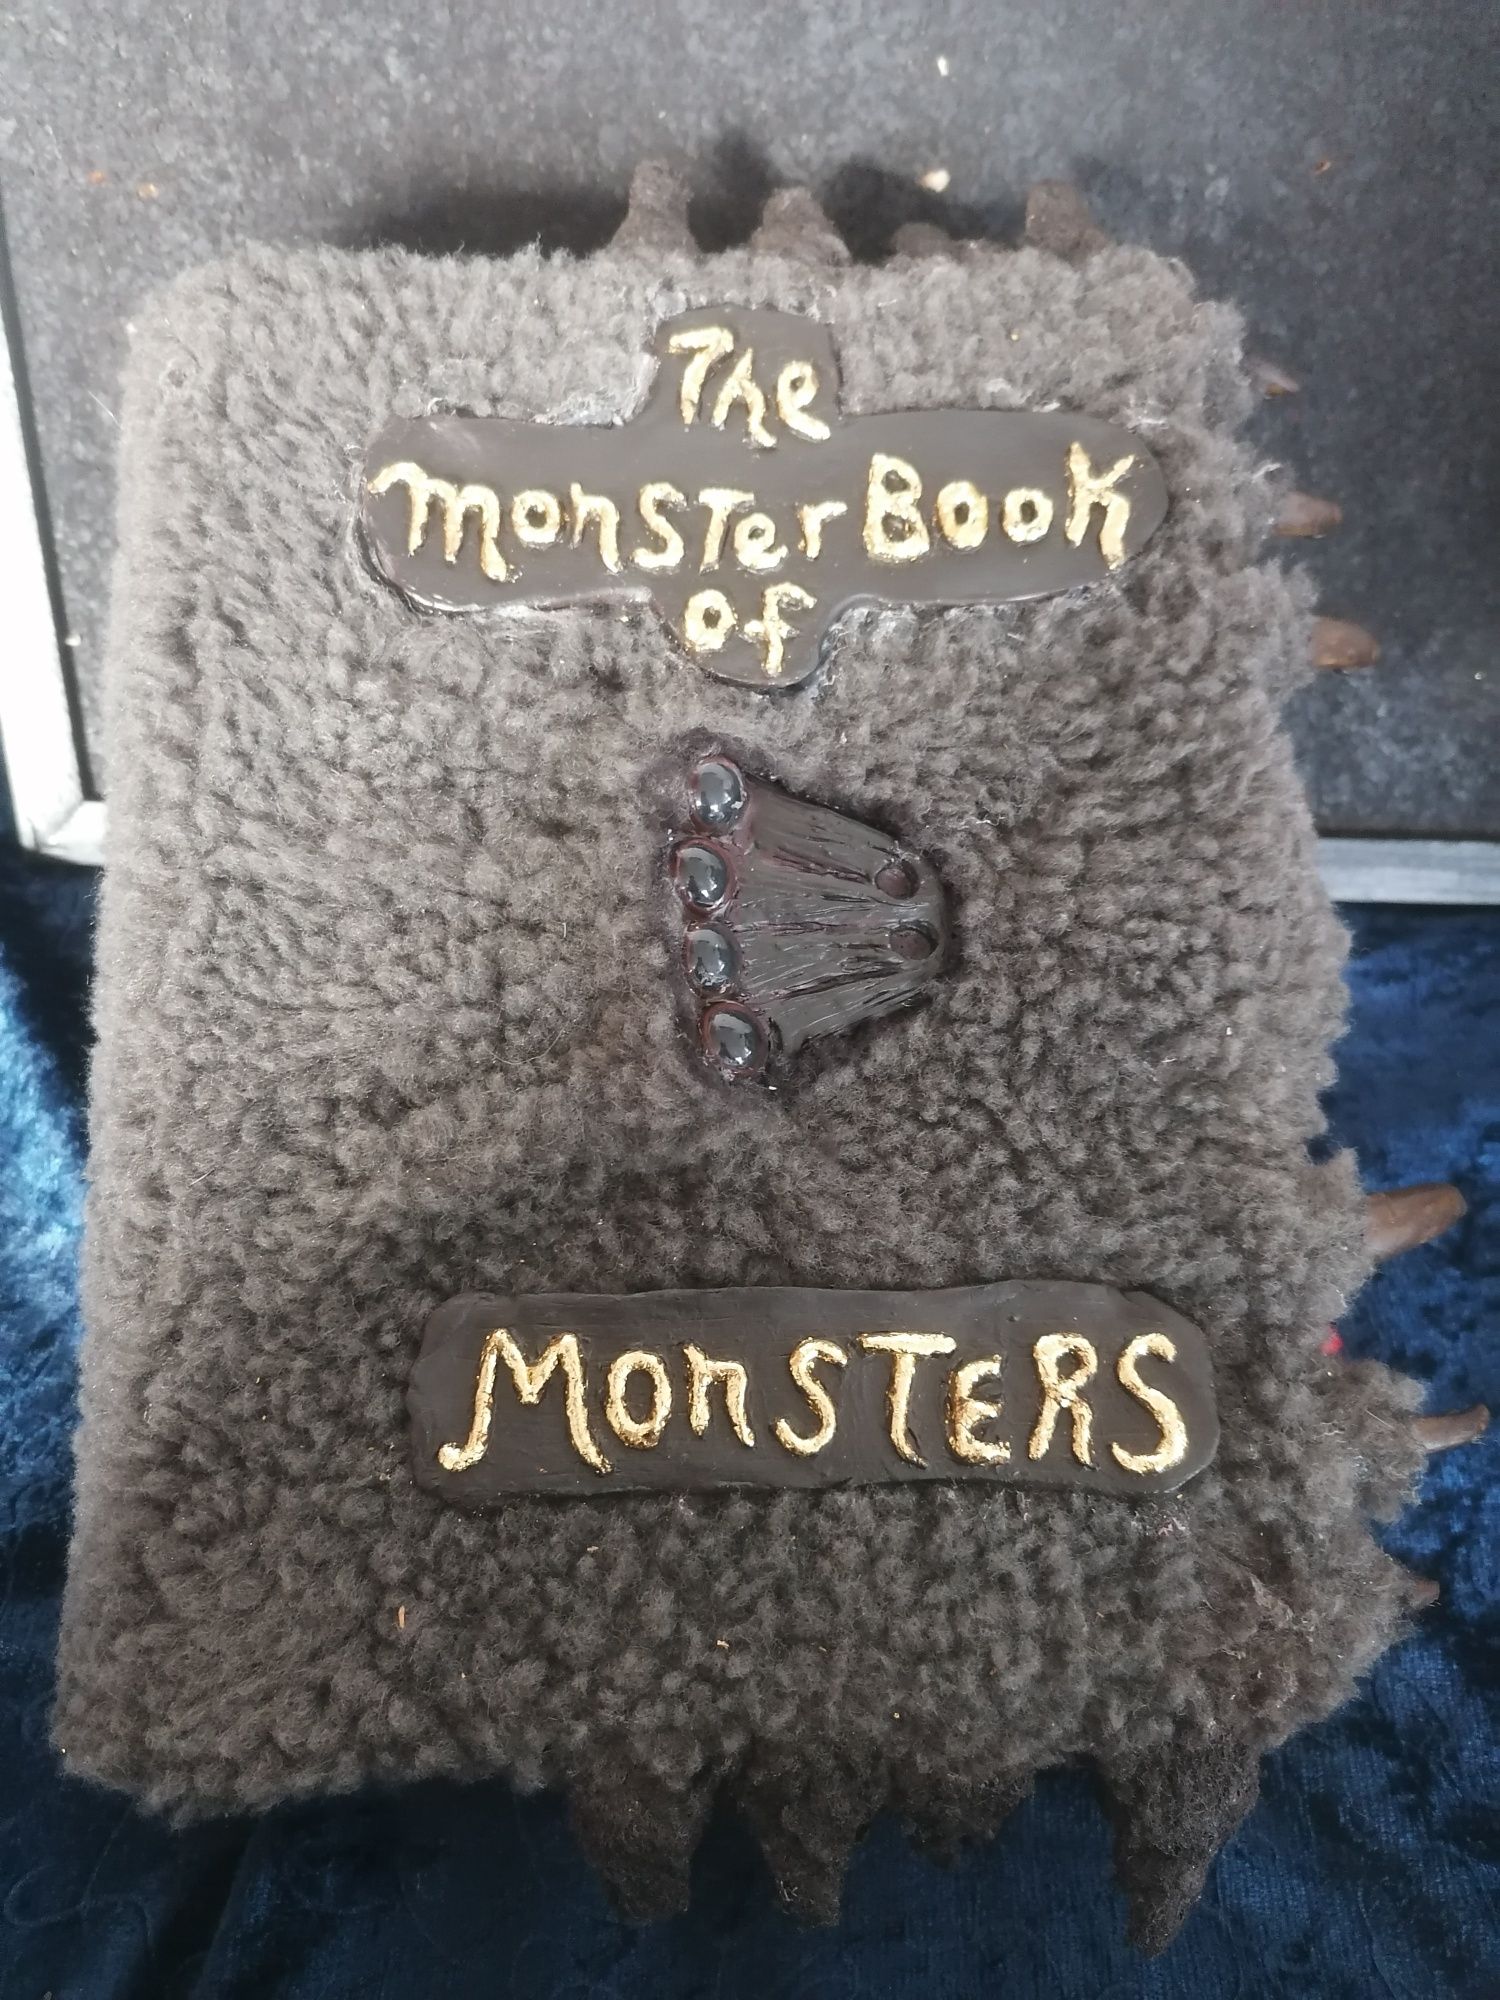 Monstro Livro dos Monstros do Harry Potter